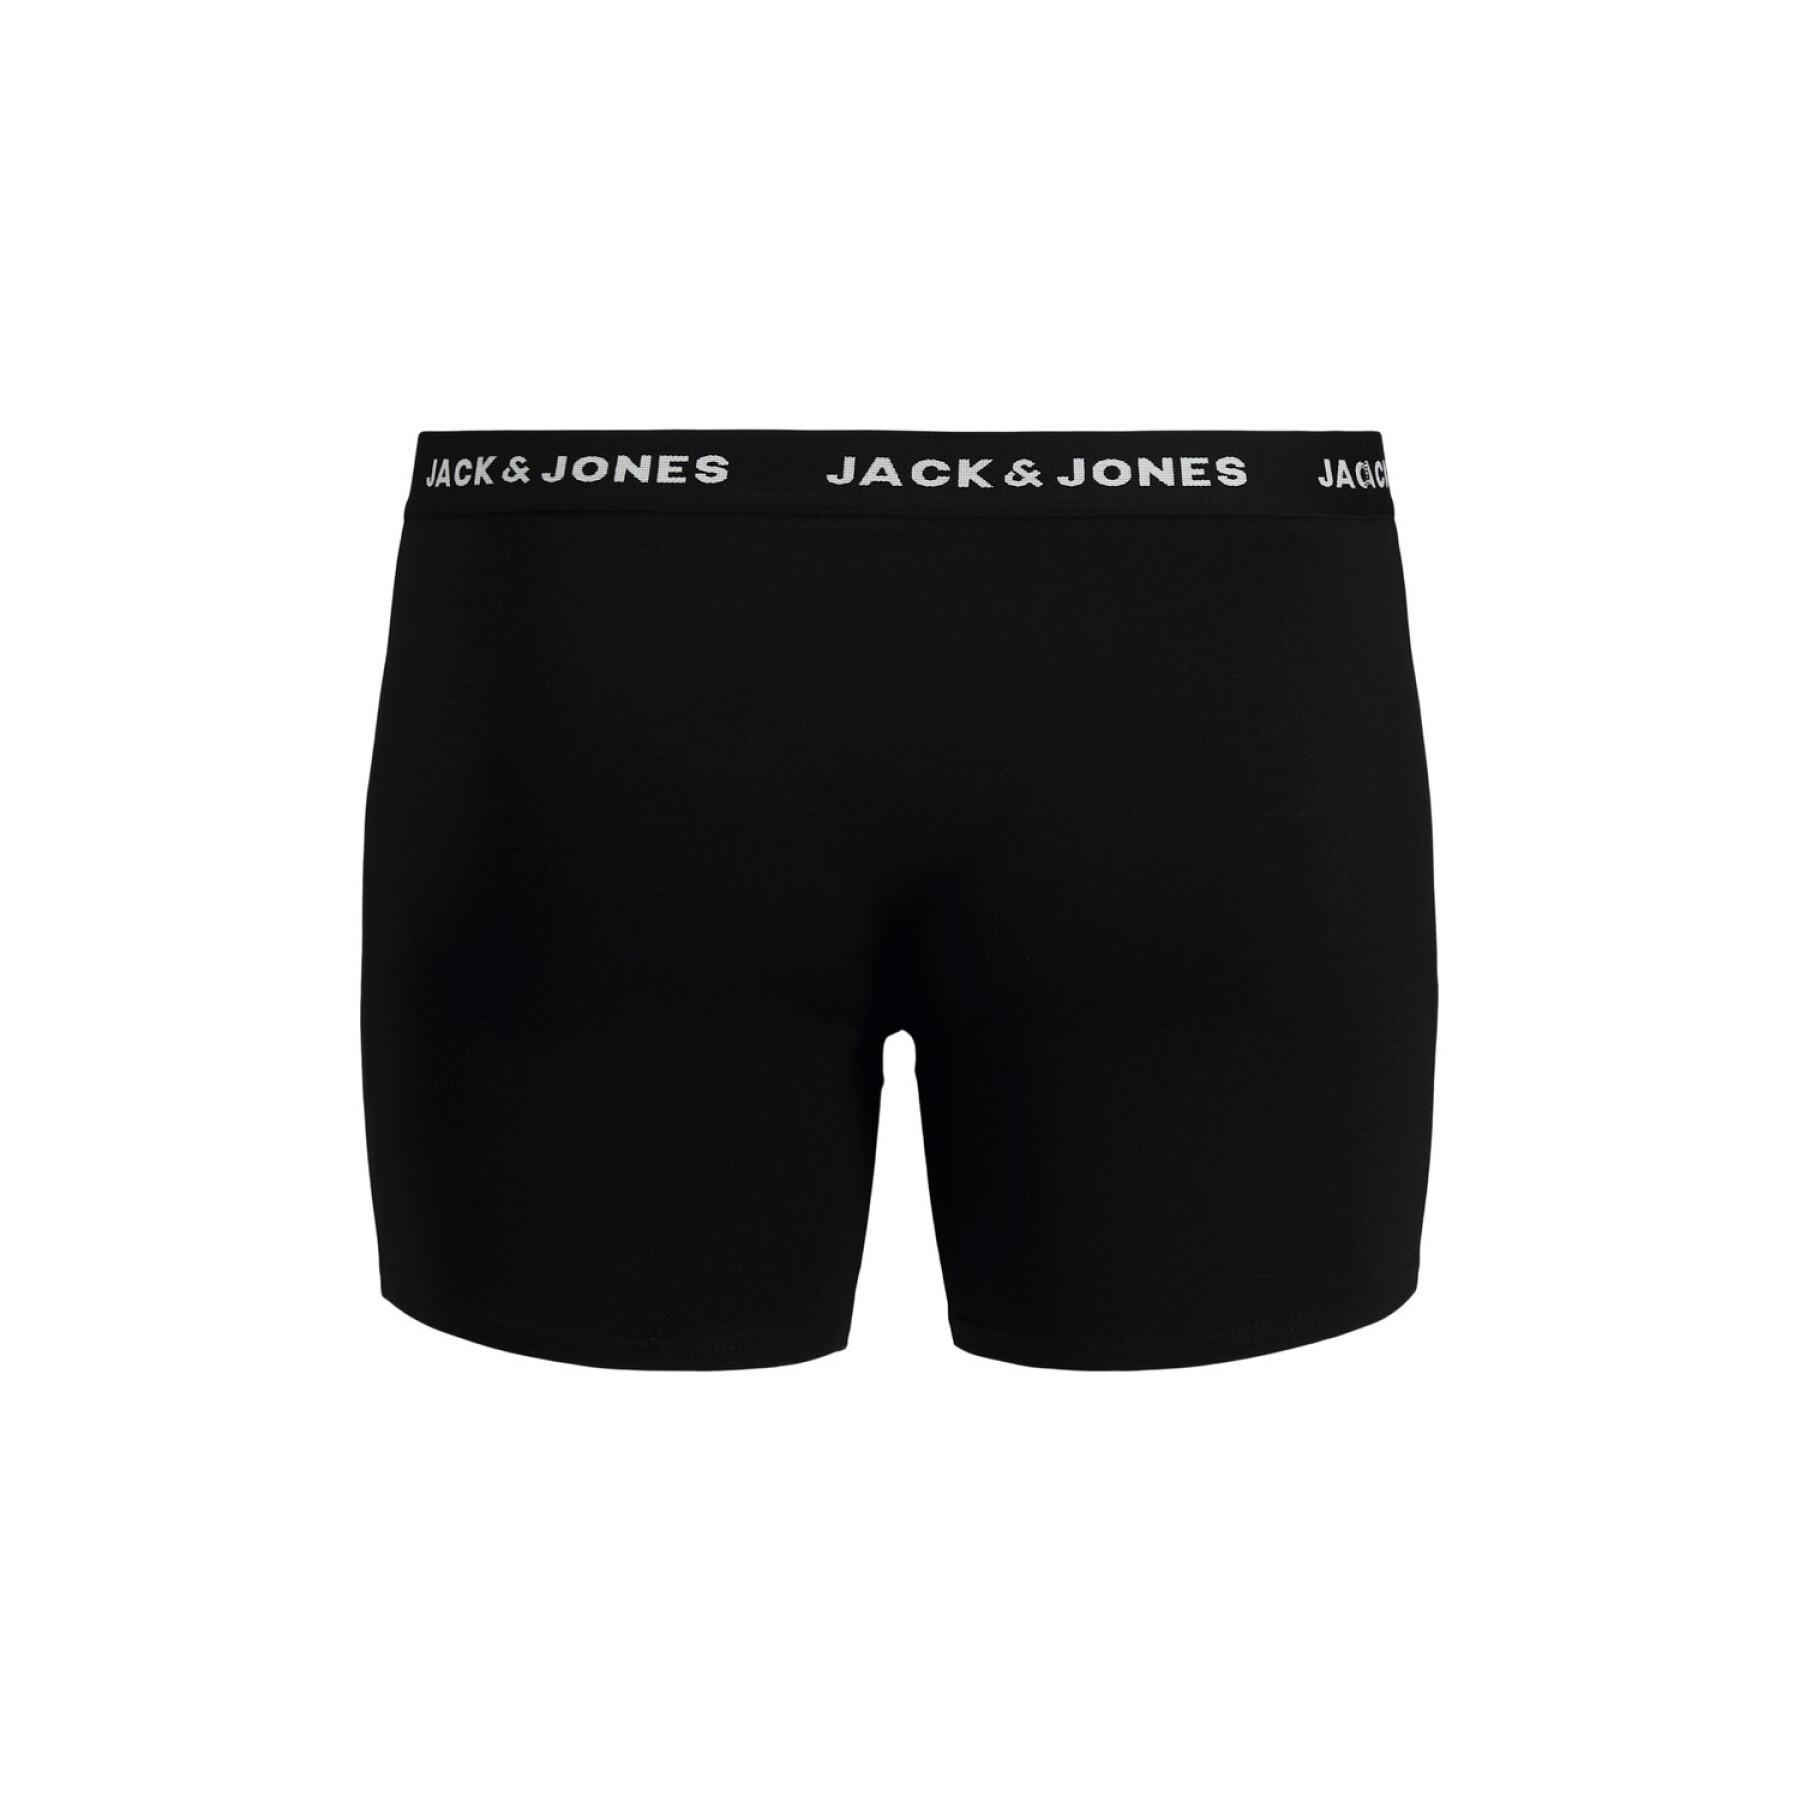 Set of 5 large boxer shorts Jack & Jones Jachuey Trunks